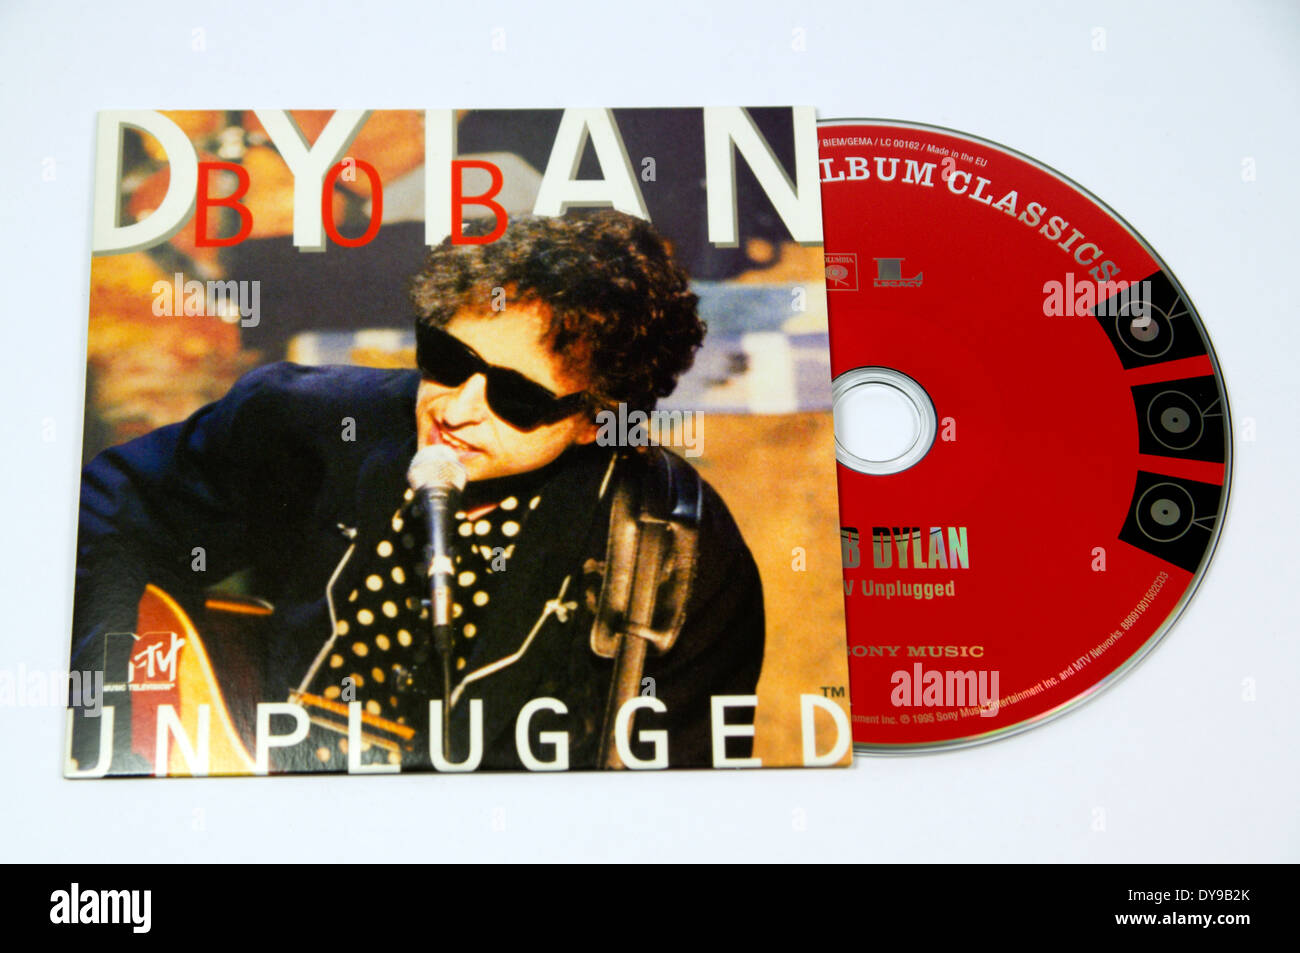 Bob Dylan Good as ich Sie Album wurde. Stockfoto